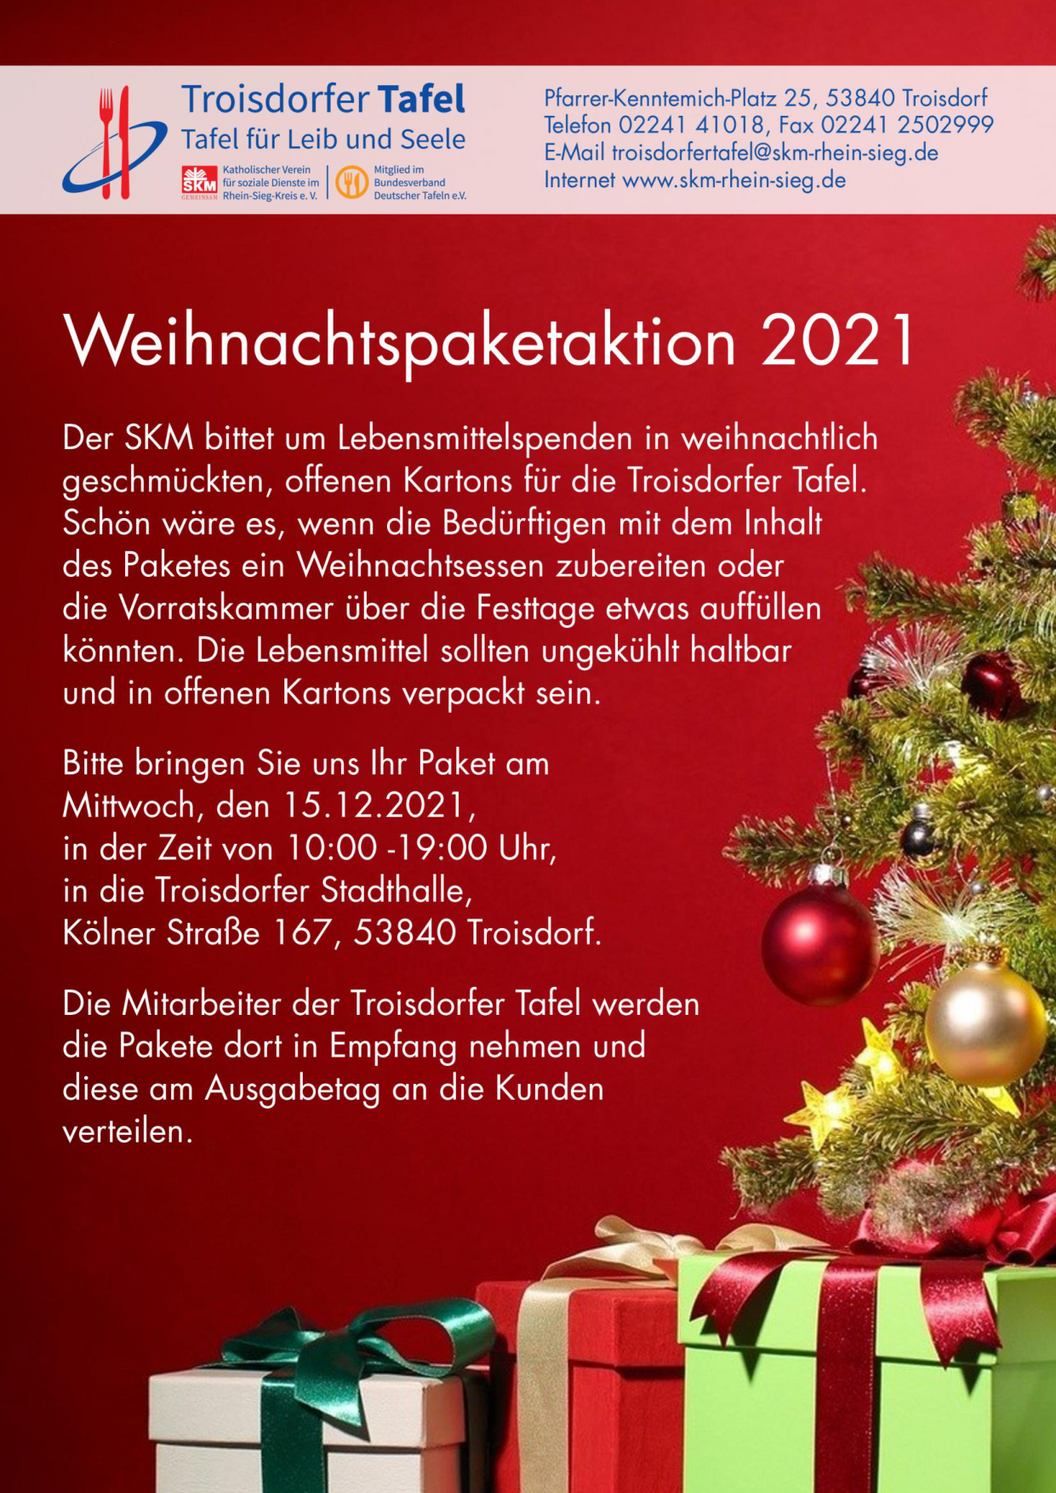 aaTT-Weihnachtspaketaktion_2021_Plakat (1)